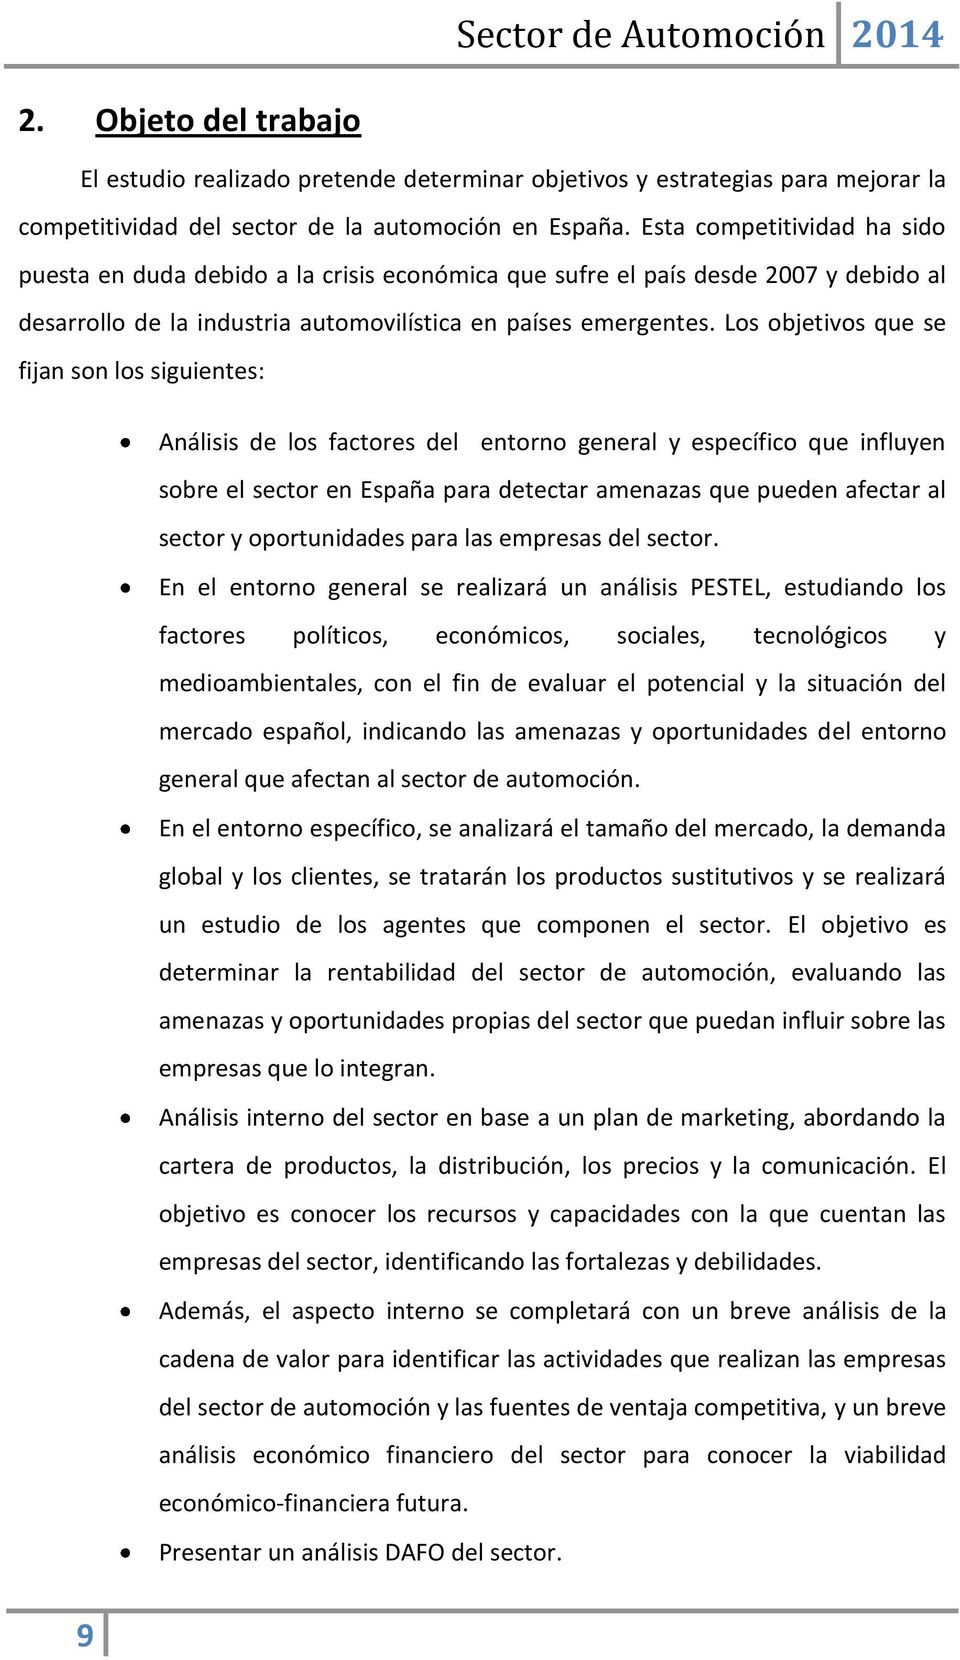 Los objetivos que se fijan son los siguientes: Análisis de los factores del entorno general y específico que influyen sobre el sector en España para detectar amenazas que pueden afectar al sector y